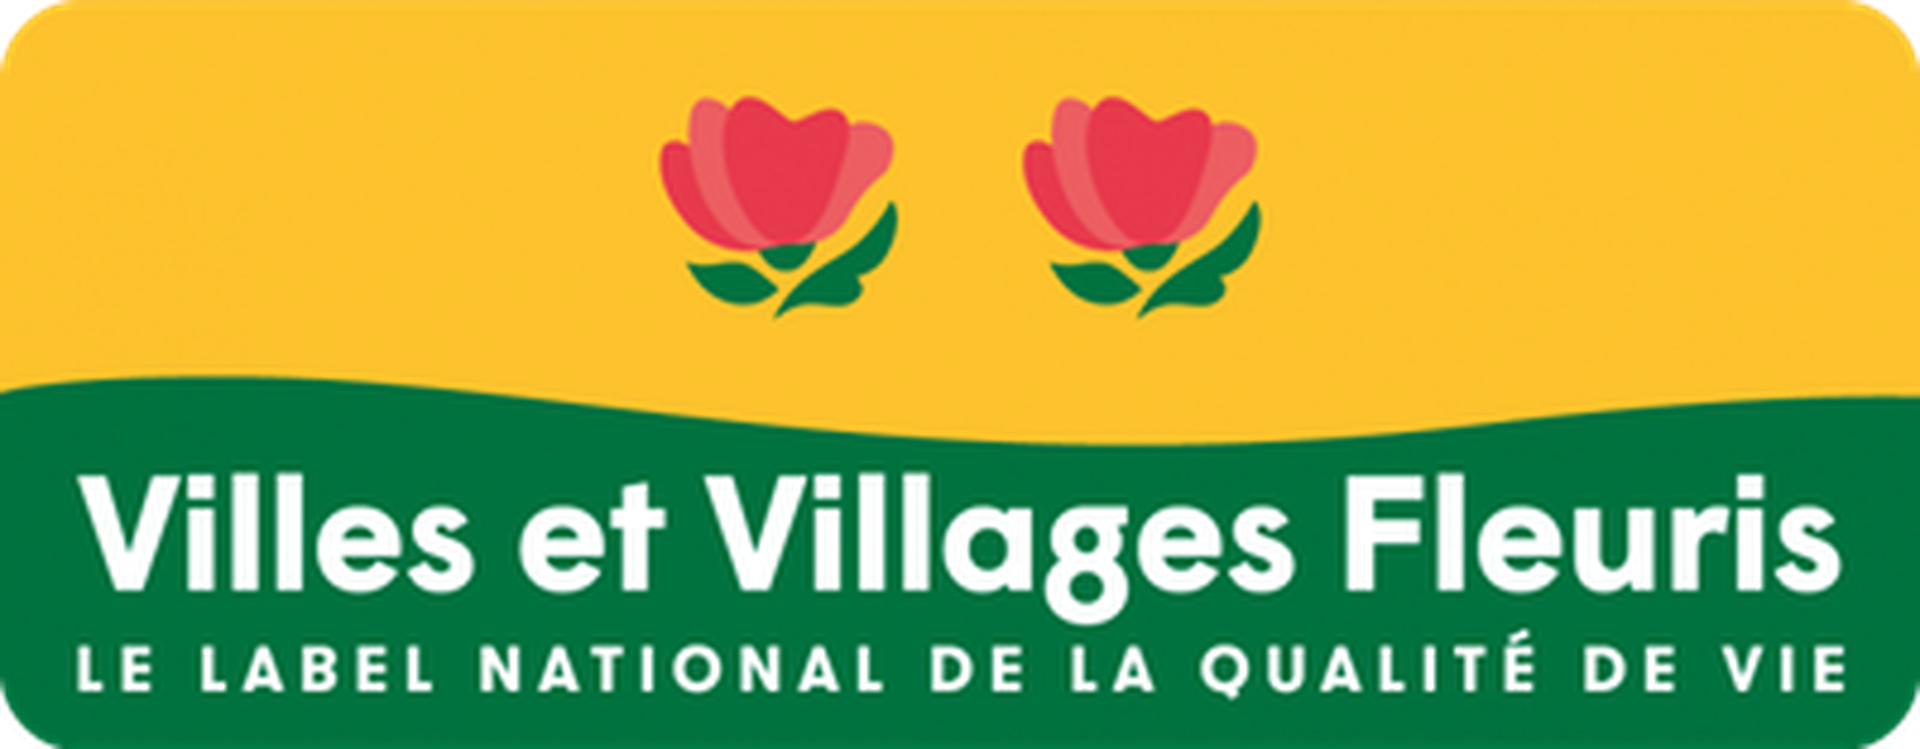 Logo Villes et Villages fleuris - 2 fleurs